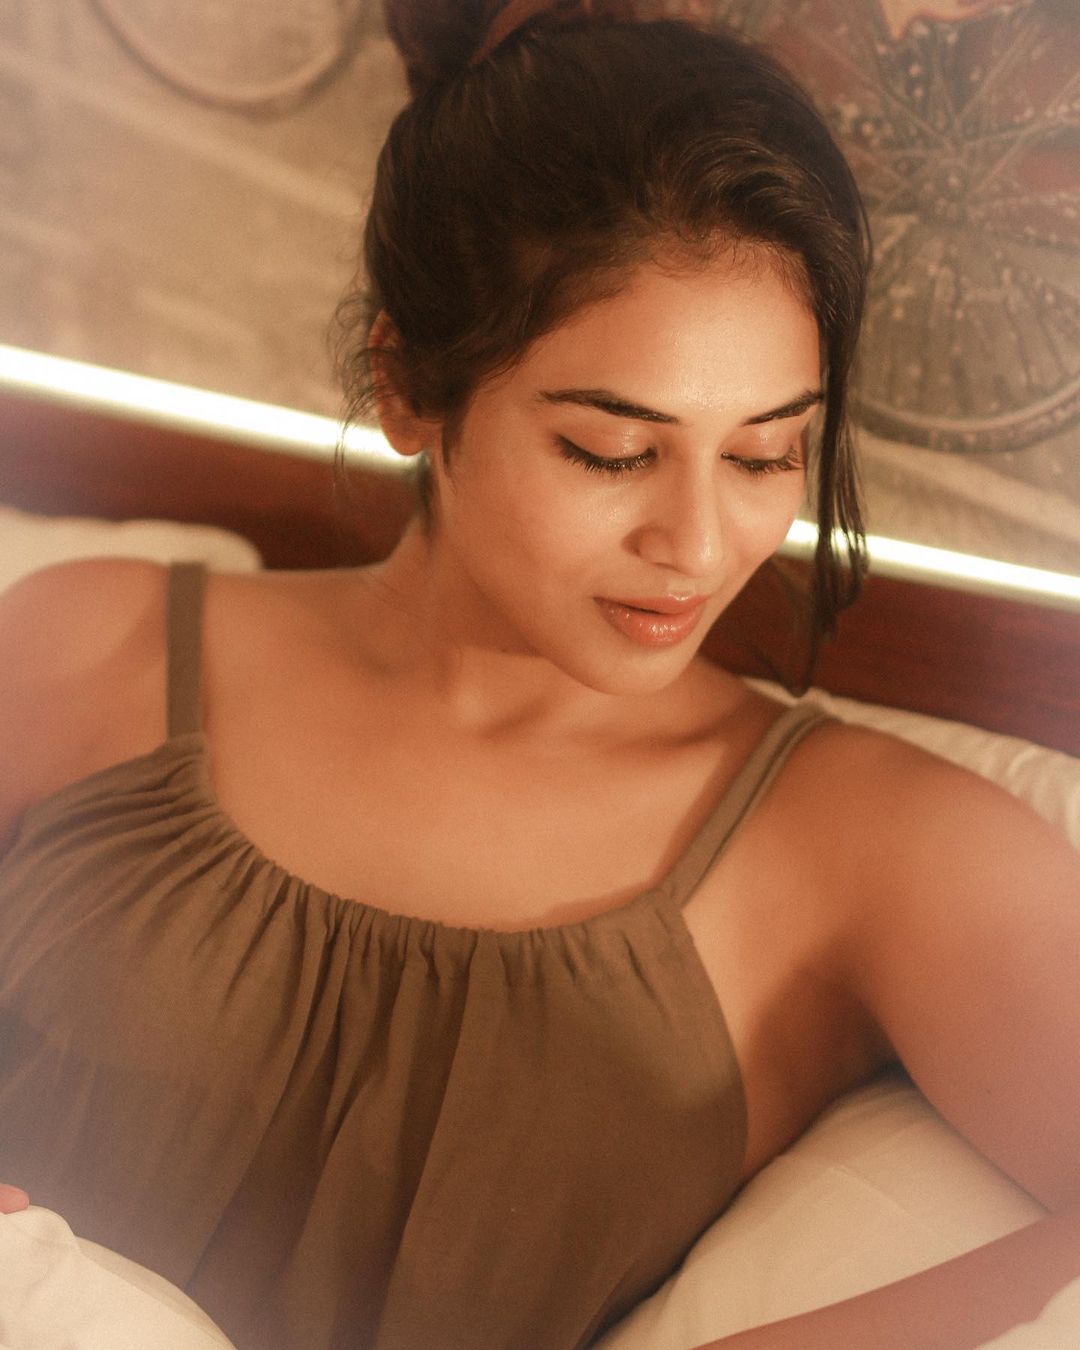 actress indhuja ravichandran hot photos in bedroom